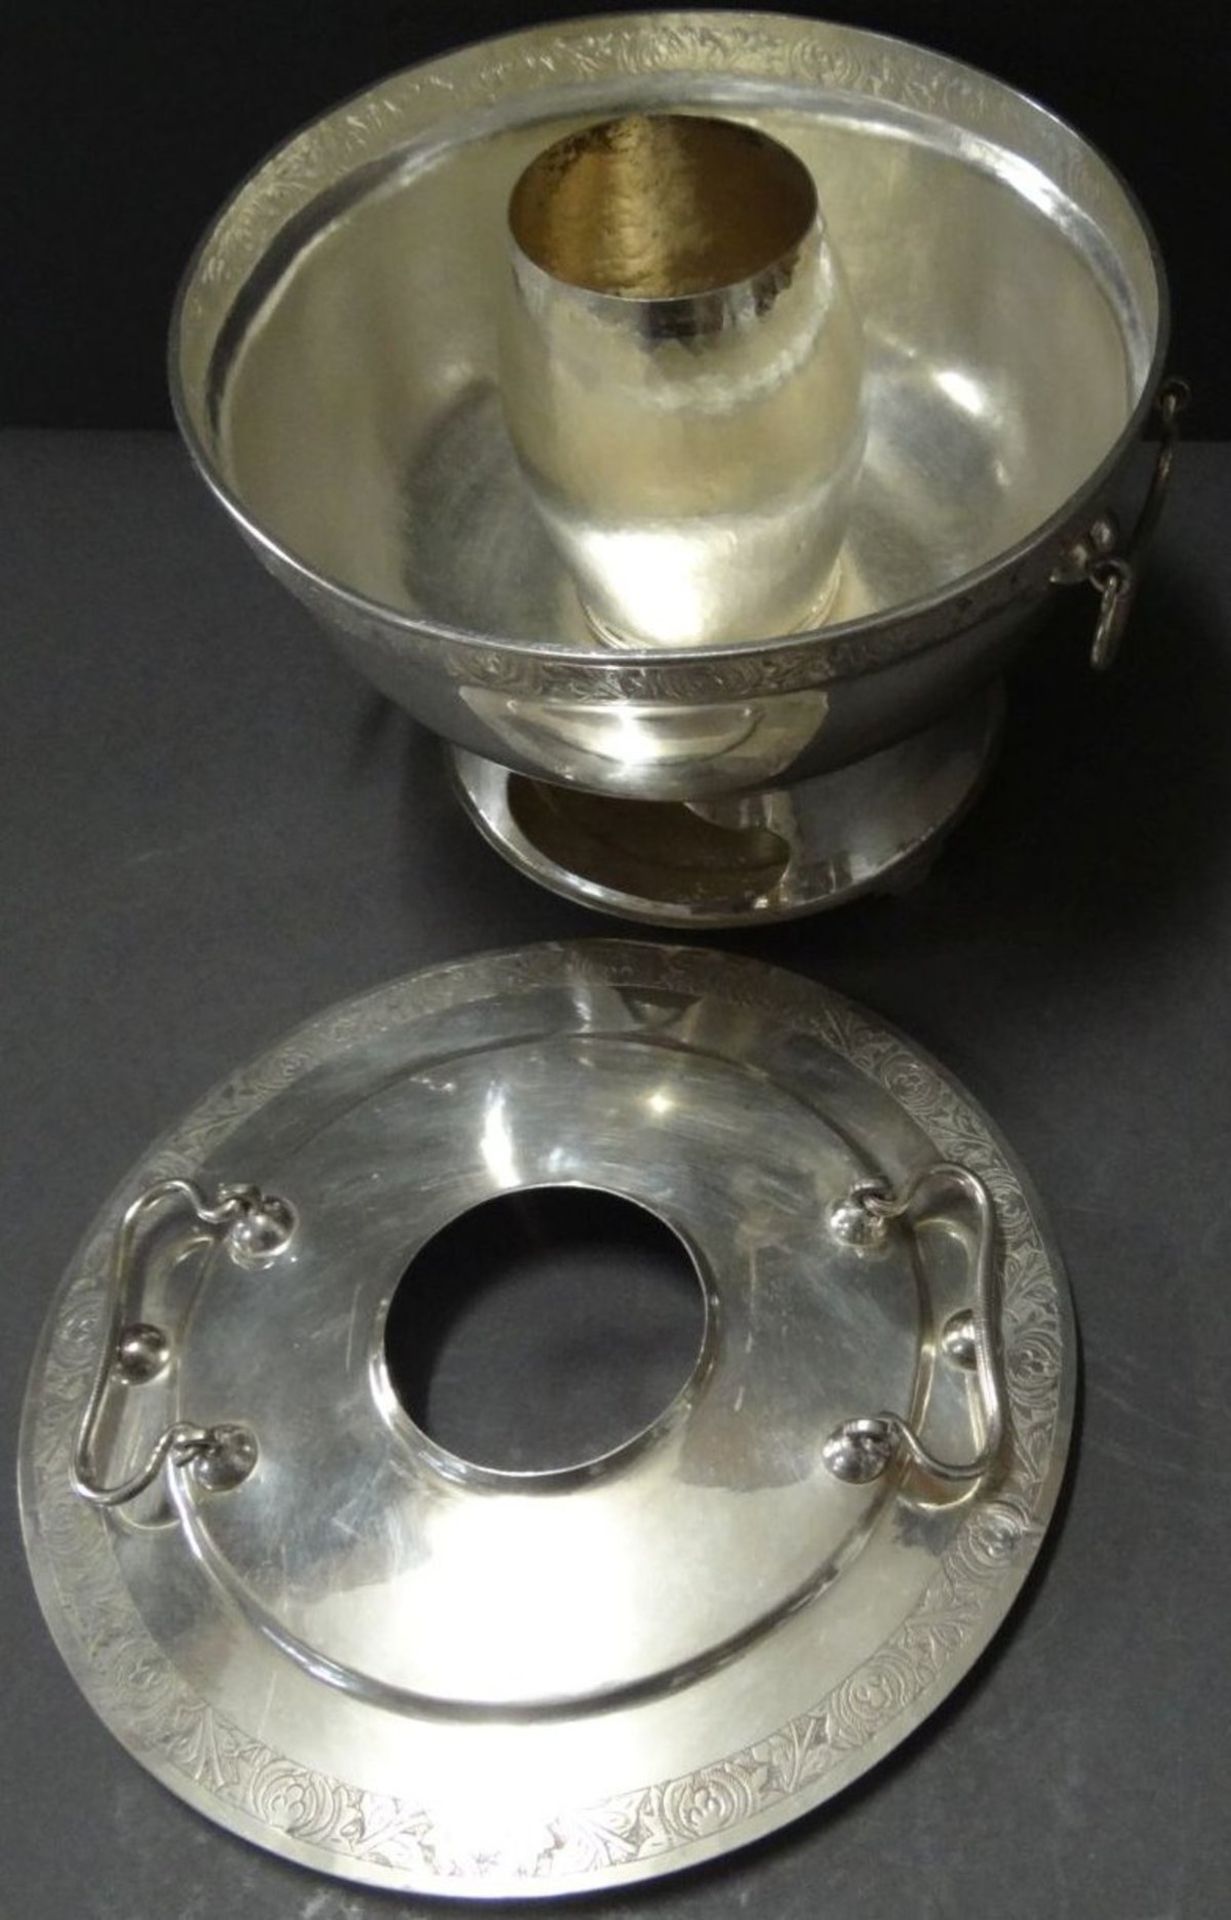 gr. Silber-Stövchen mit Henkel, , H-13 cm, D-18 cm, undeutlich in Boden gepunzt (China?), 881 gramm, - Bild 5 aus 10